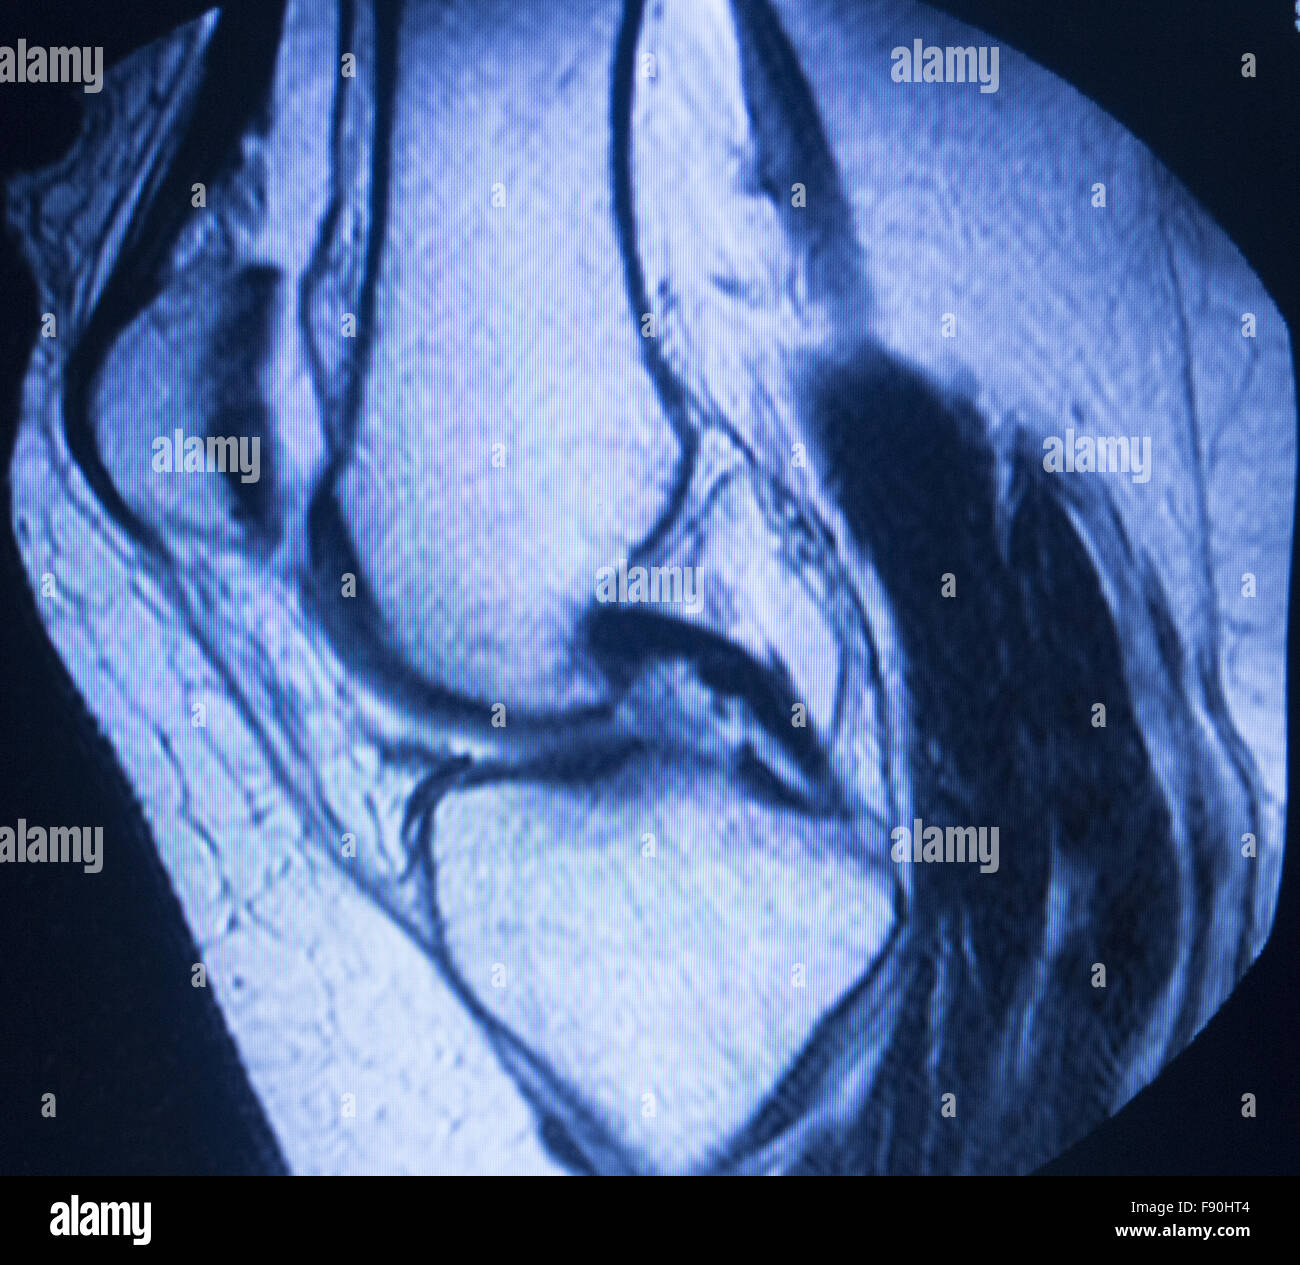 Mekaniker Had vinden er stærk MRI magnetic resonance imaging medical scan test results showing knee  joint, meniscus, femur, thigh and calf of leg, ligaments Stock Photo - Alamy